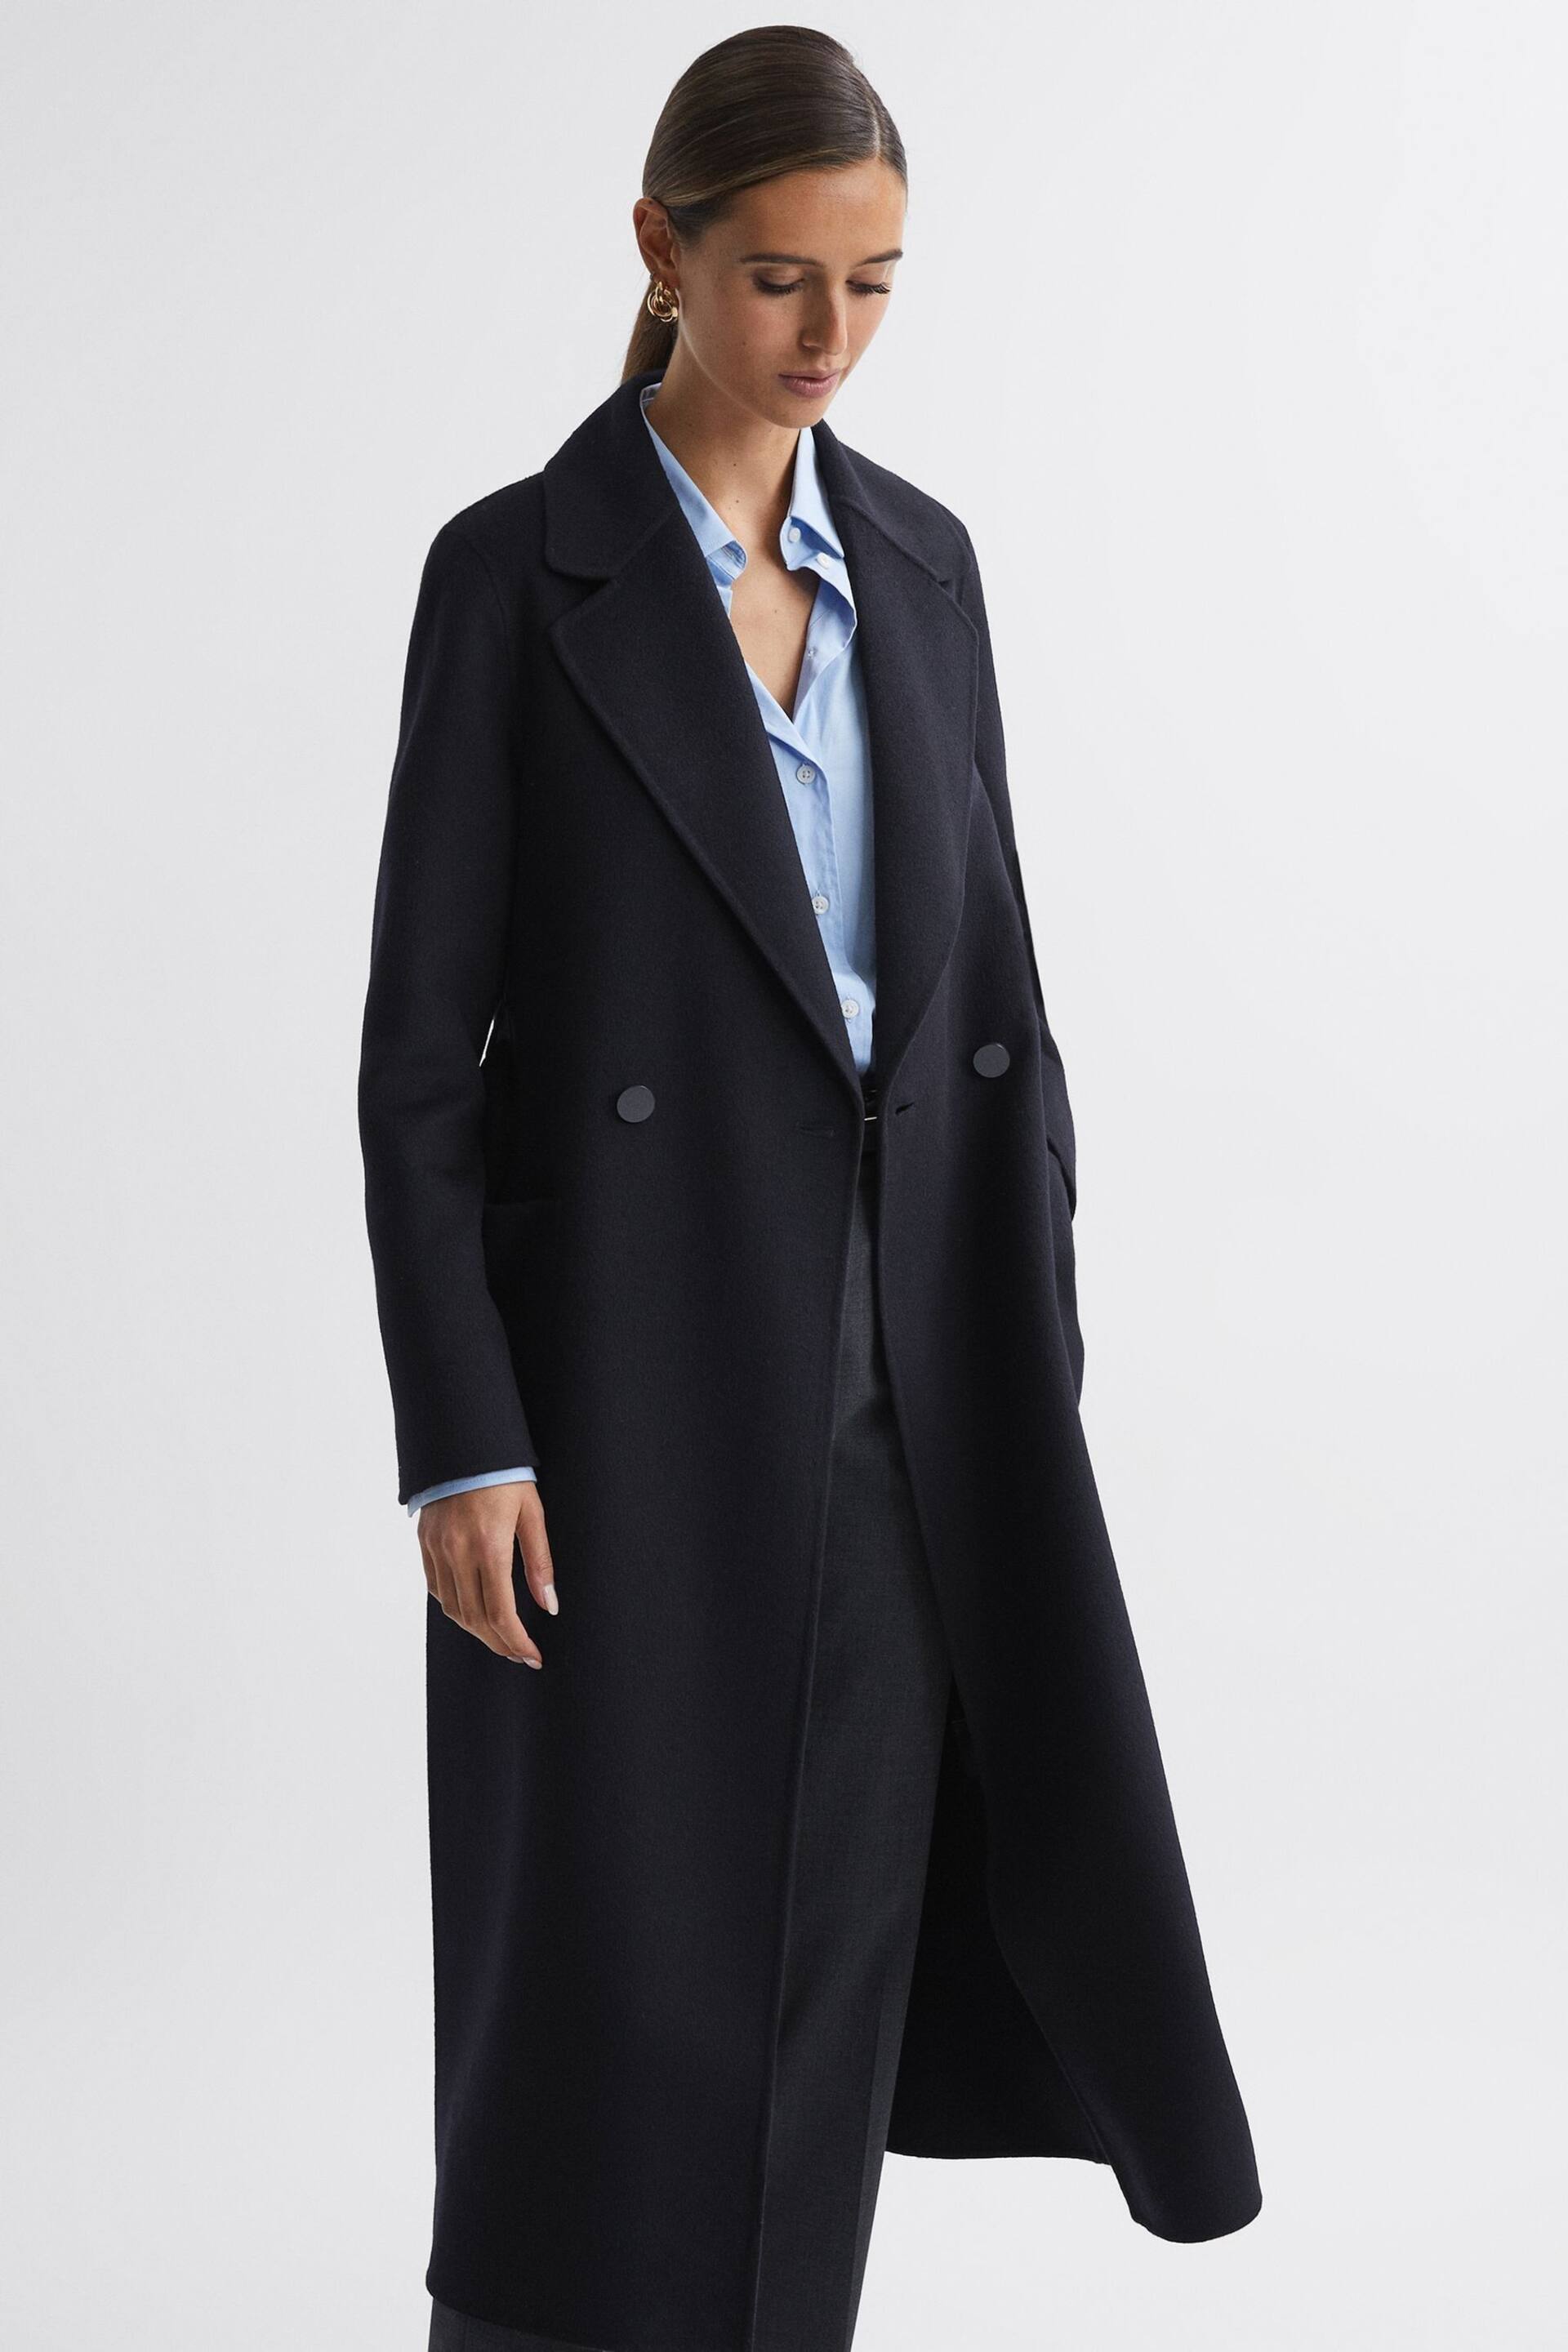 Reiss Navy Lucia Long Wool Blend Blindseam Coat - Image 3 of 5